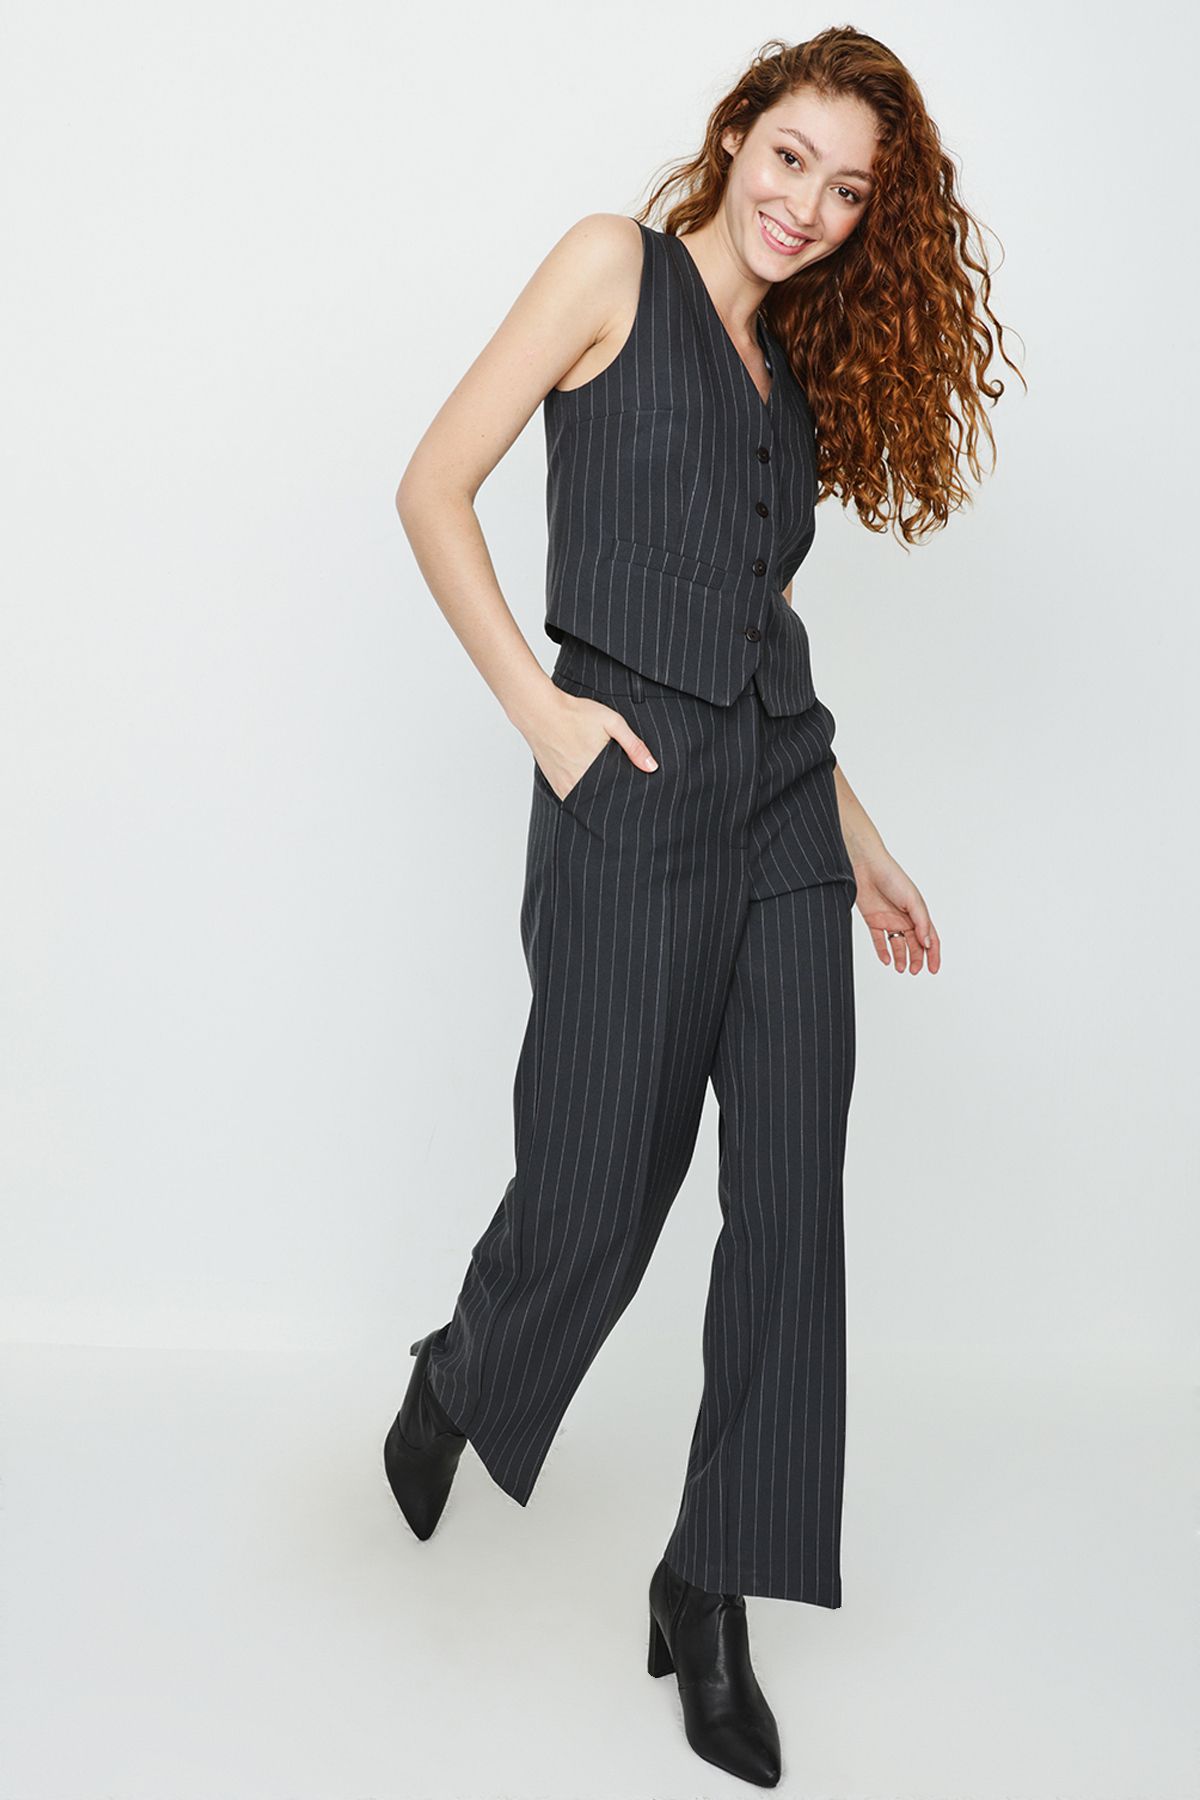 Select Moda Kadın Antrasit Çizgili Geniş Paça Pantolon